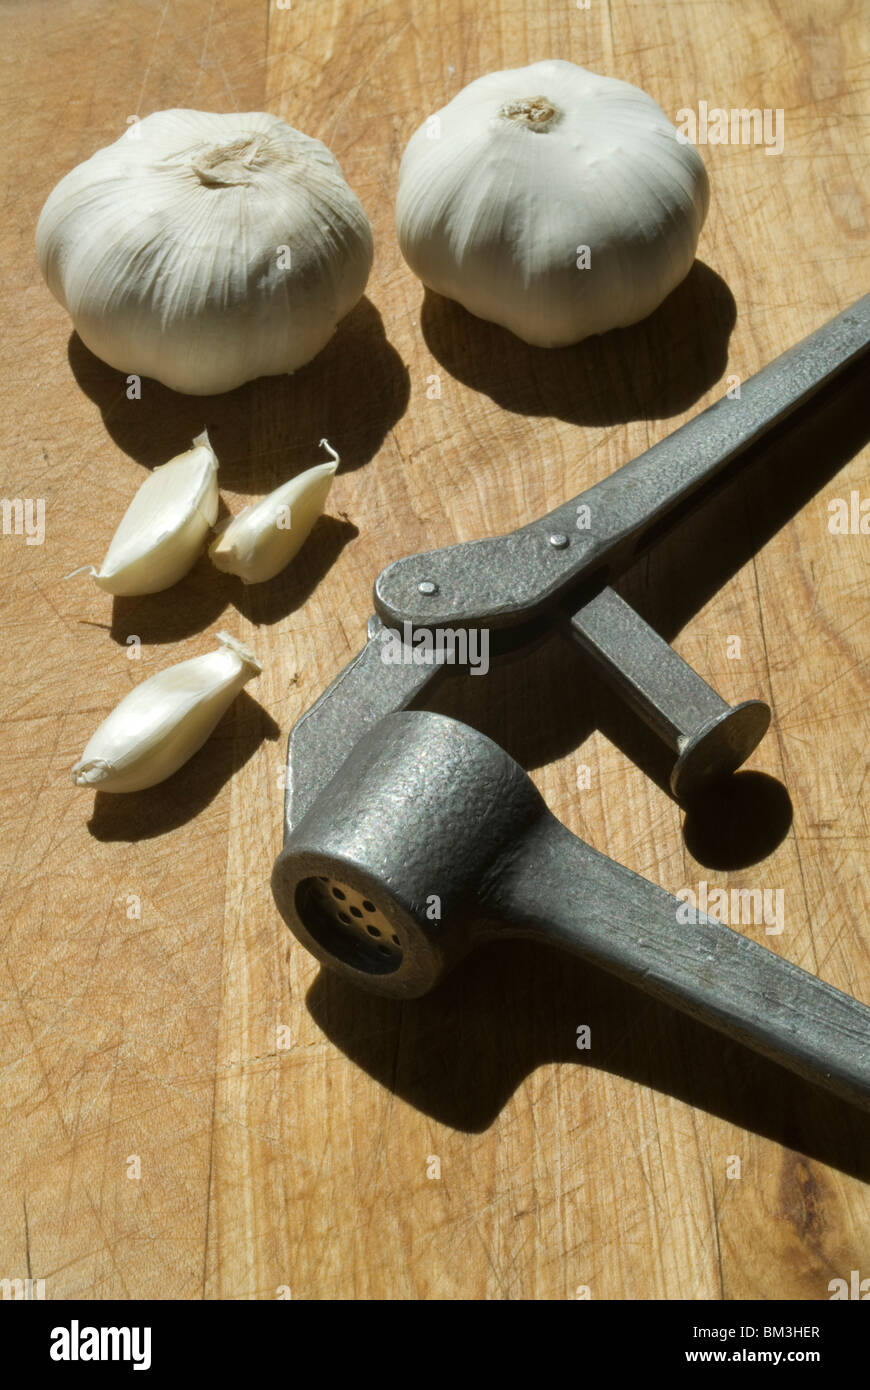 Old Fashioned Garlic Press